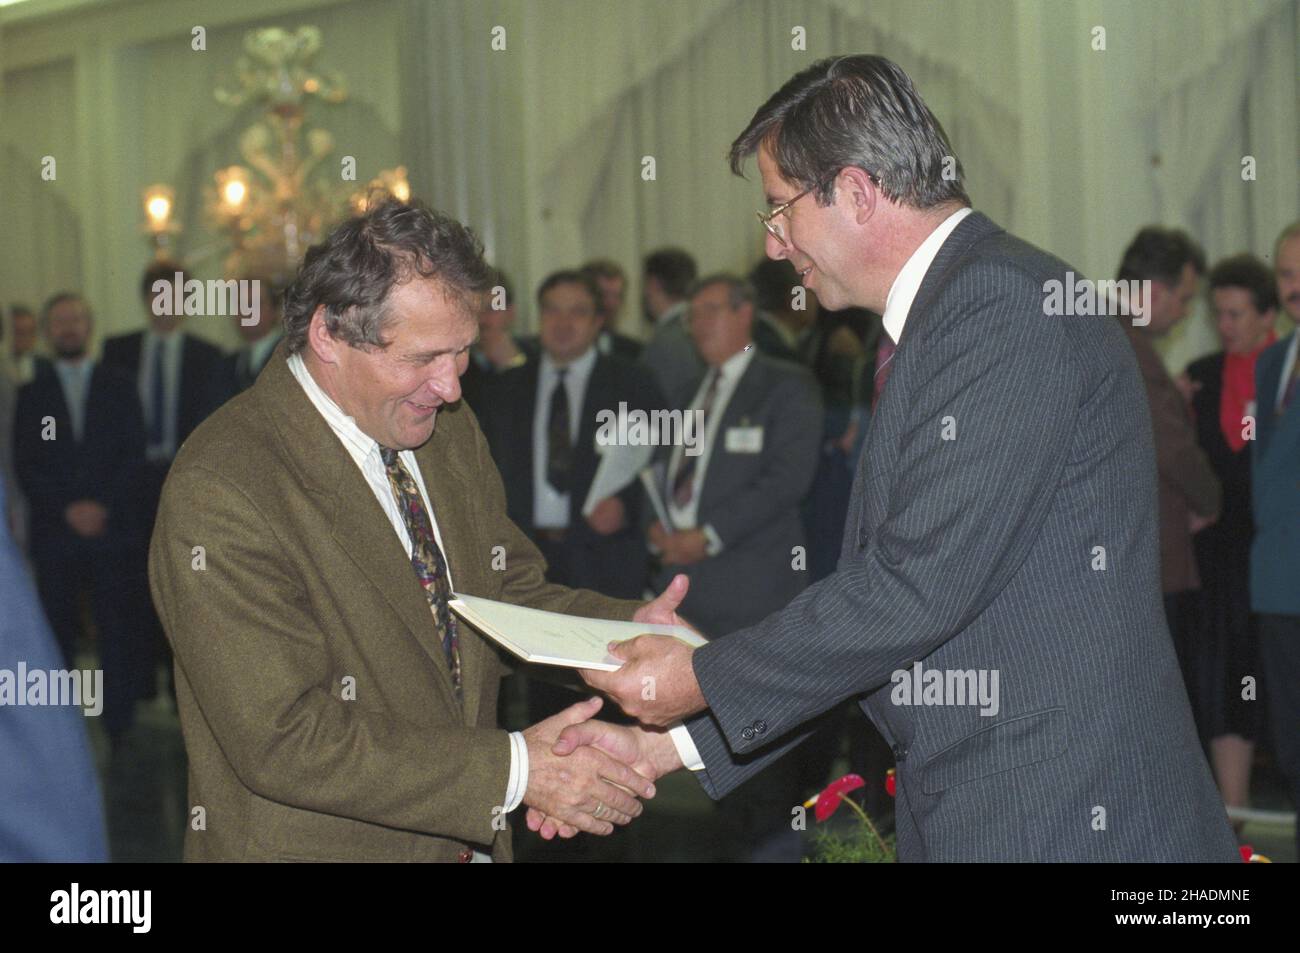 Warszawa 13.10.1993. Uroczystoœæ w Sali Kolumnowej Sejmu wrêczenia pose³om II kadencji zaœwiadczeñ o wyborze od Pañstwowej Komisji Wyborczej (PKW). Nz. przewodnicz¹cy PKW Andrzej Zoll (P), pose³ Henryk Wujec (L). uu  PAP/Adam Urbanek       Warsaw 13 October 1993. Deputies of the 2nd ternure receive election certificates issued by the State Electoral Commission (PKW) at the Sejm Column Hall. Pictured: PKW chairman Andrzej Zoll (left) hands the certificate to deputy Henryk Wujec (right).  uu  PAP/Adam Urbanek Stock Photo